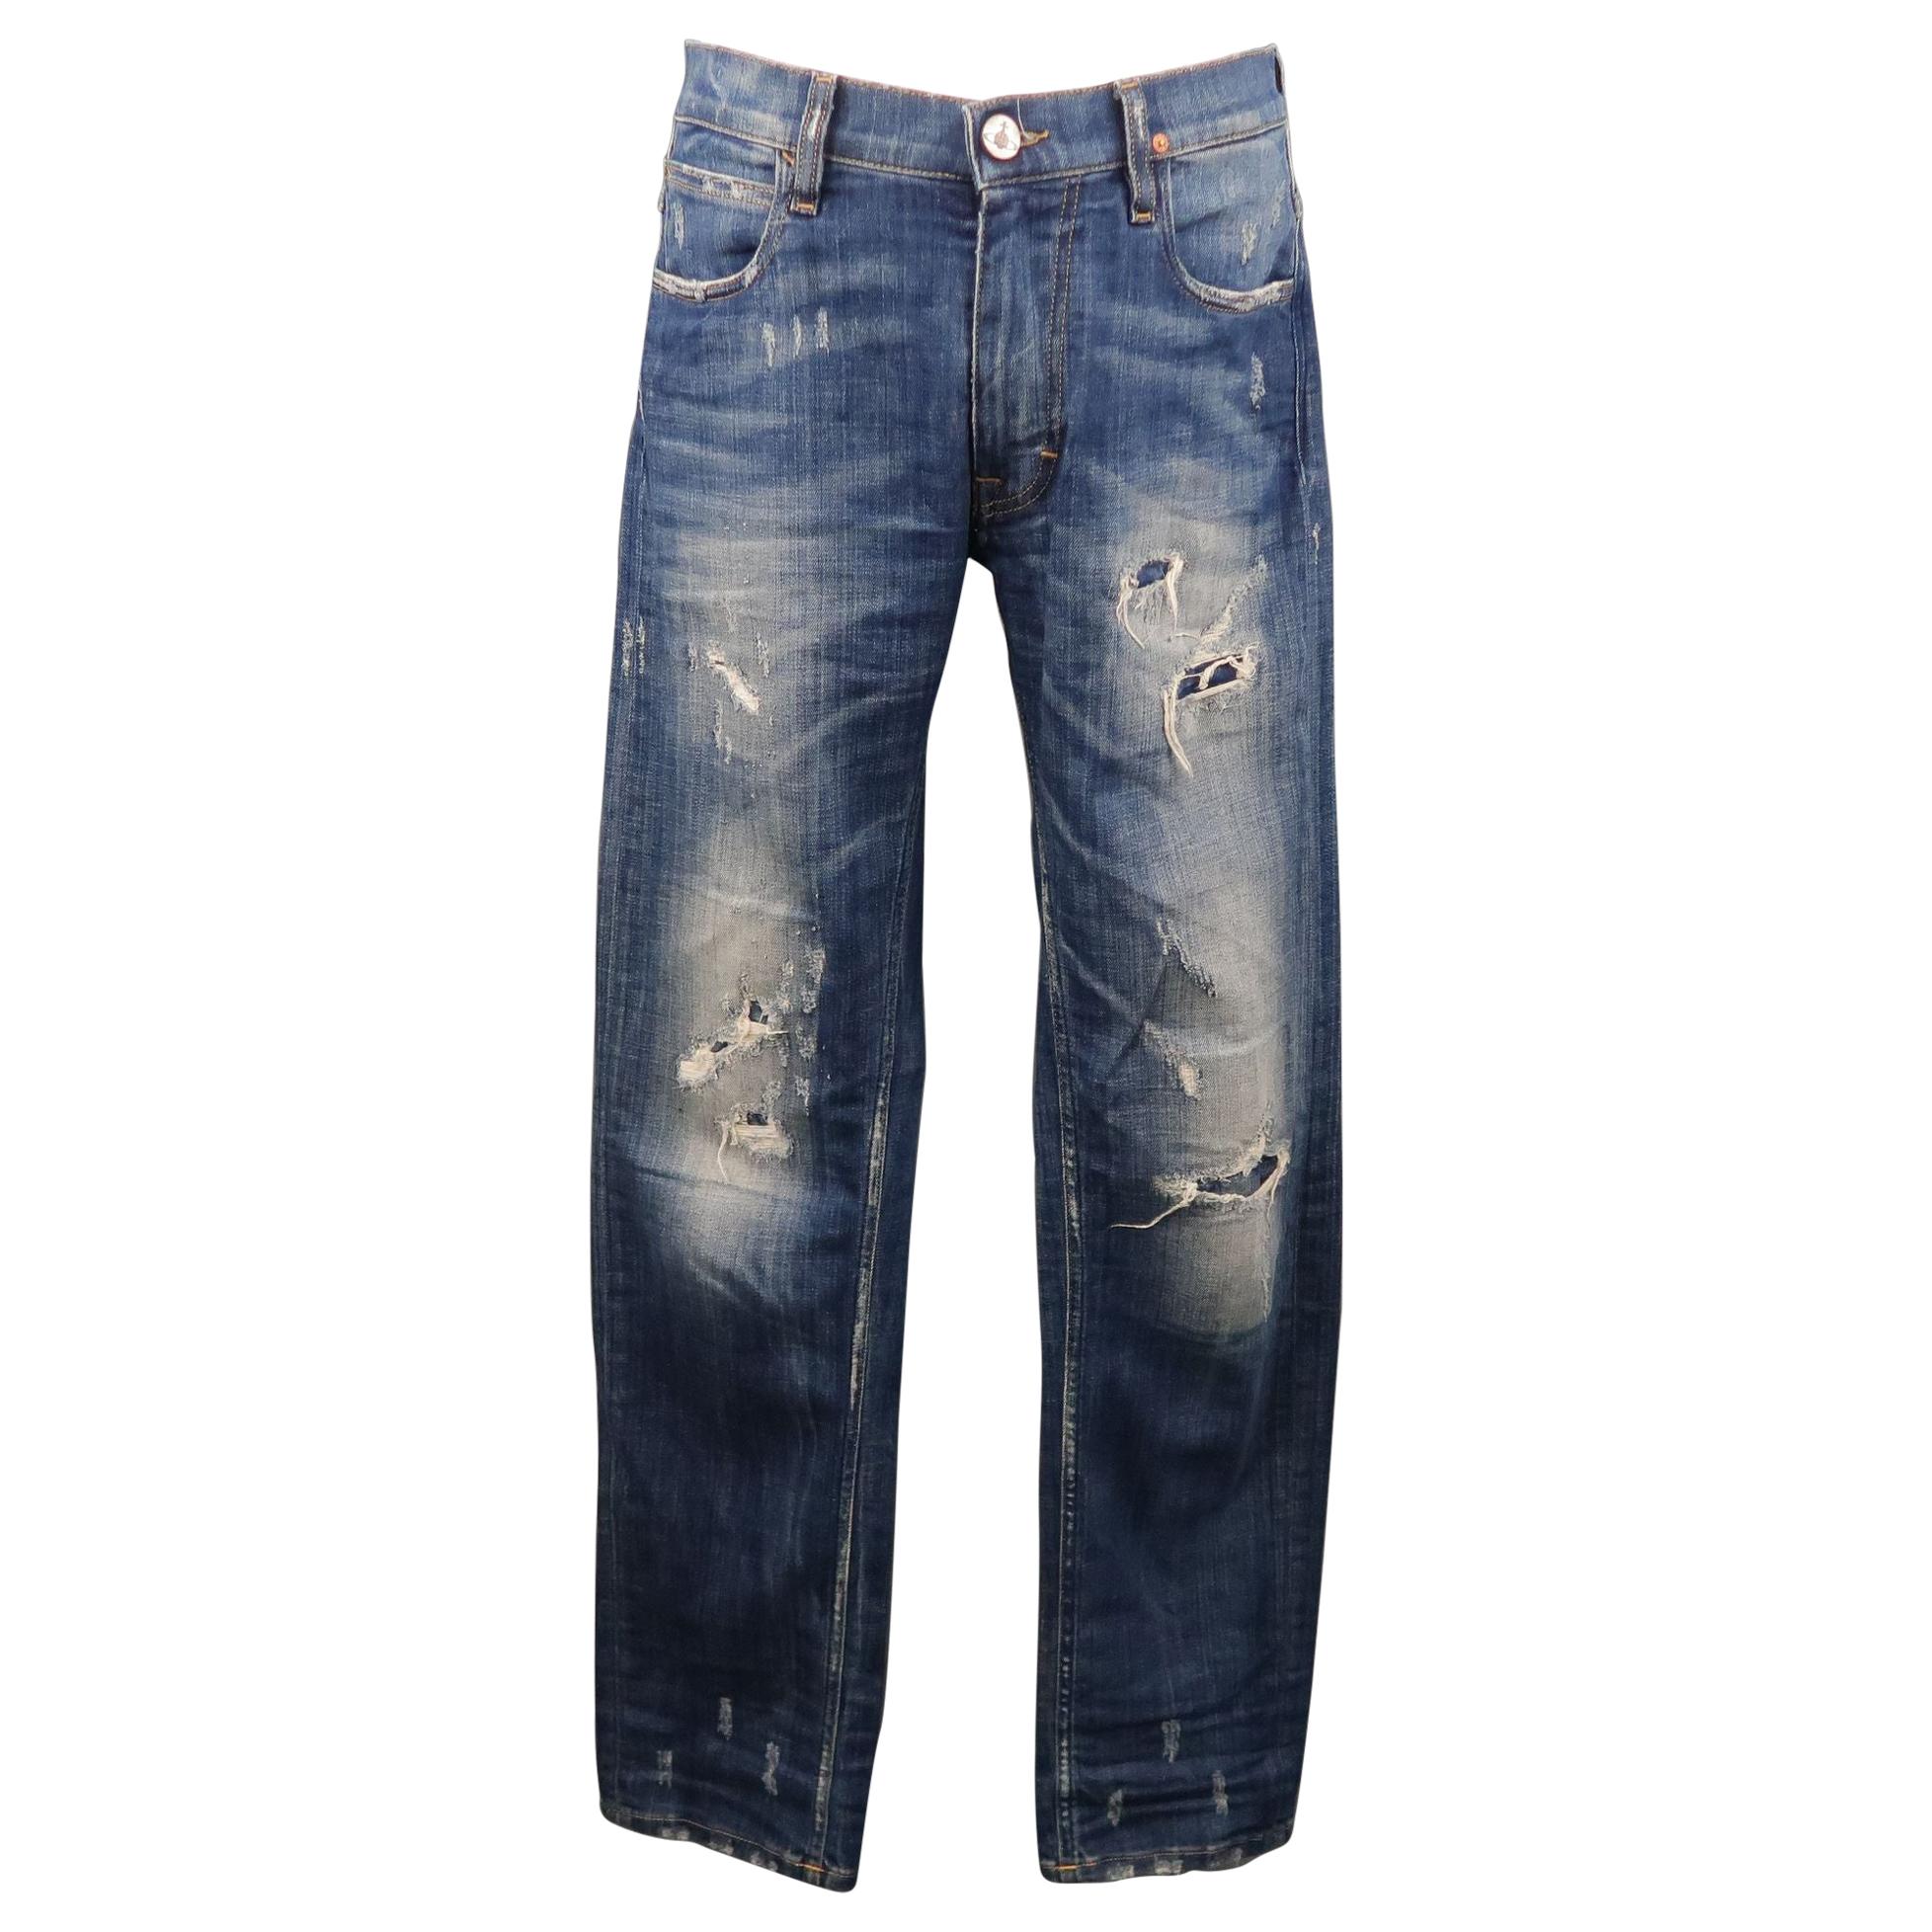 VIVIENNE WESTWOOD Size 30 Indigo Distressed Denim Jeans